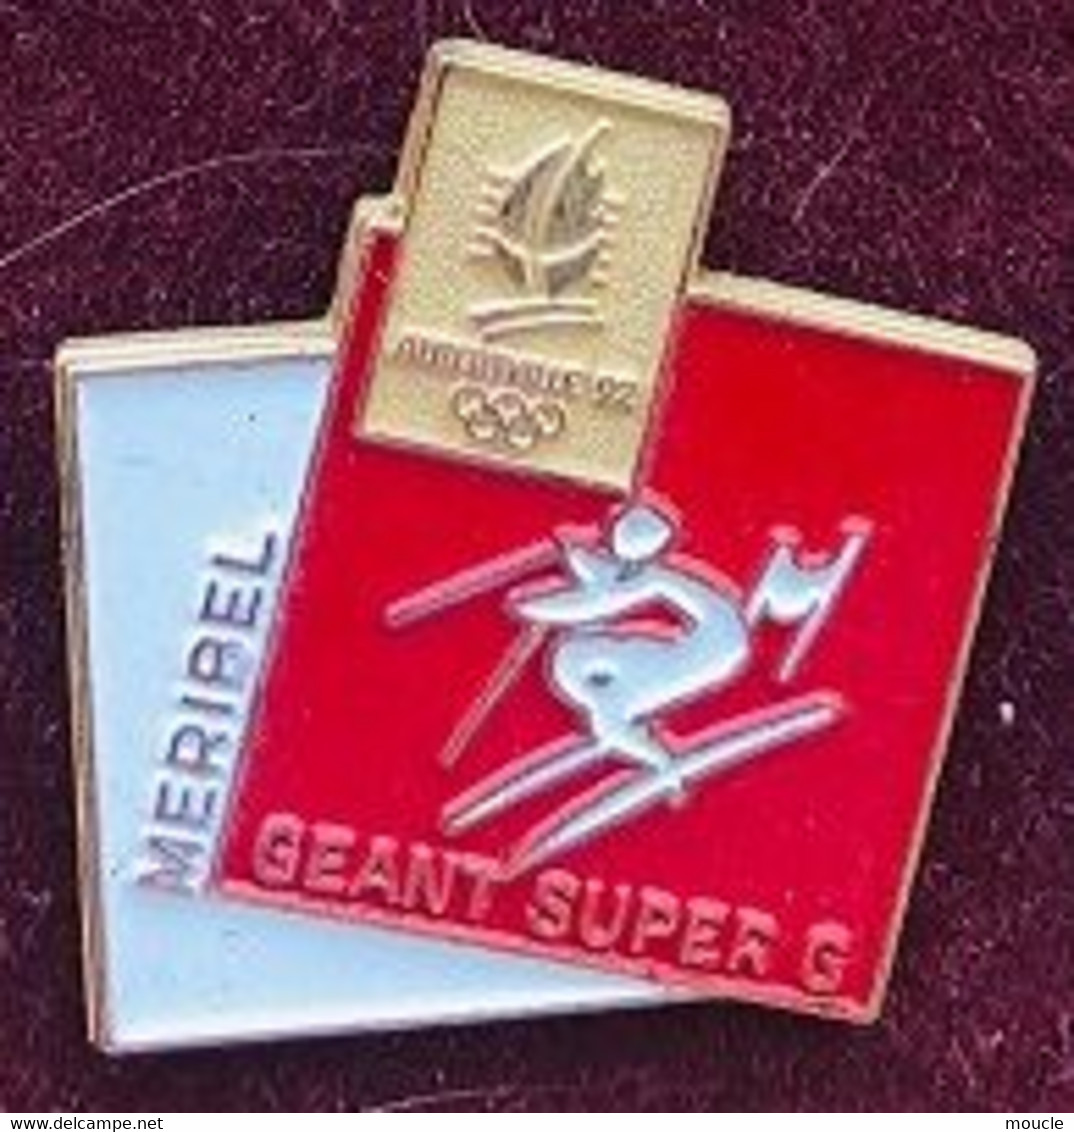 ALBERTVILLE 1992 / 92 - FRANCE - SITE MERIBEL - SKI - SLALOM GEANT - SUPER G - JEUX OLYMPIQUES - SAVOIE - ANNEAUX - (JO) - Jeux Olympiques